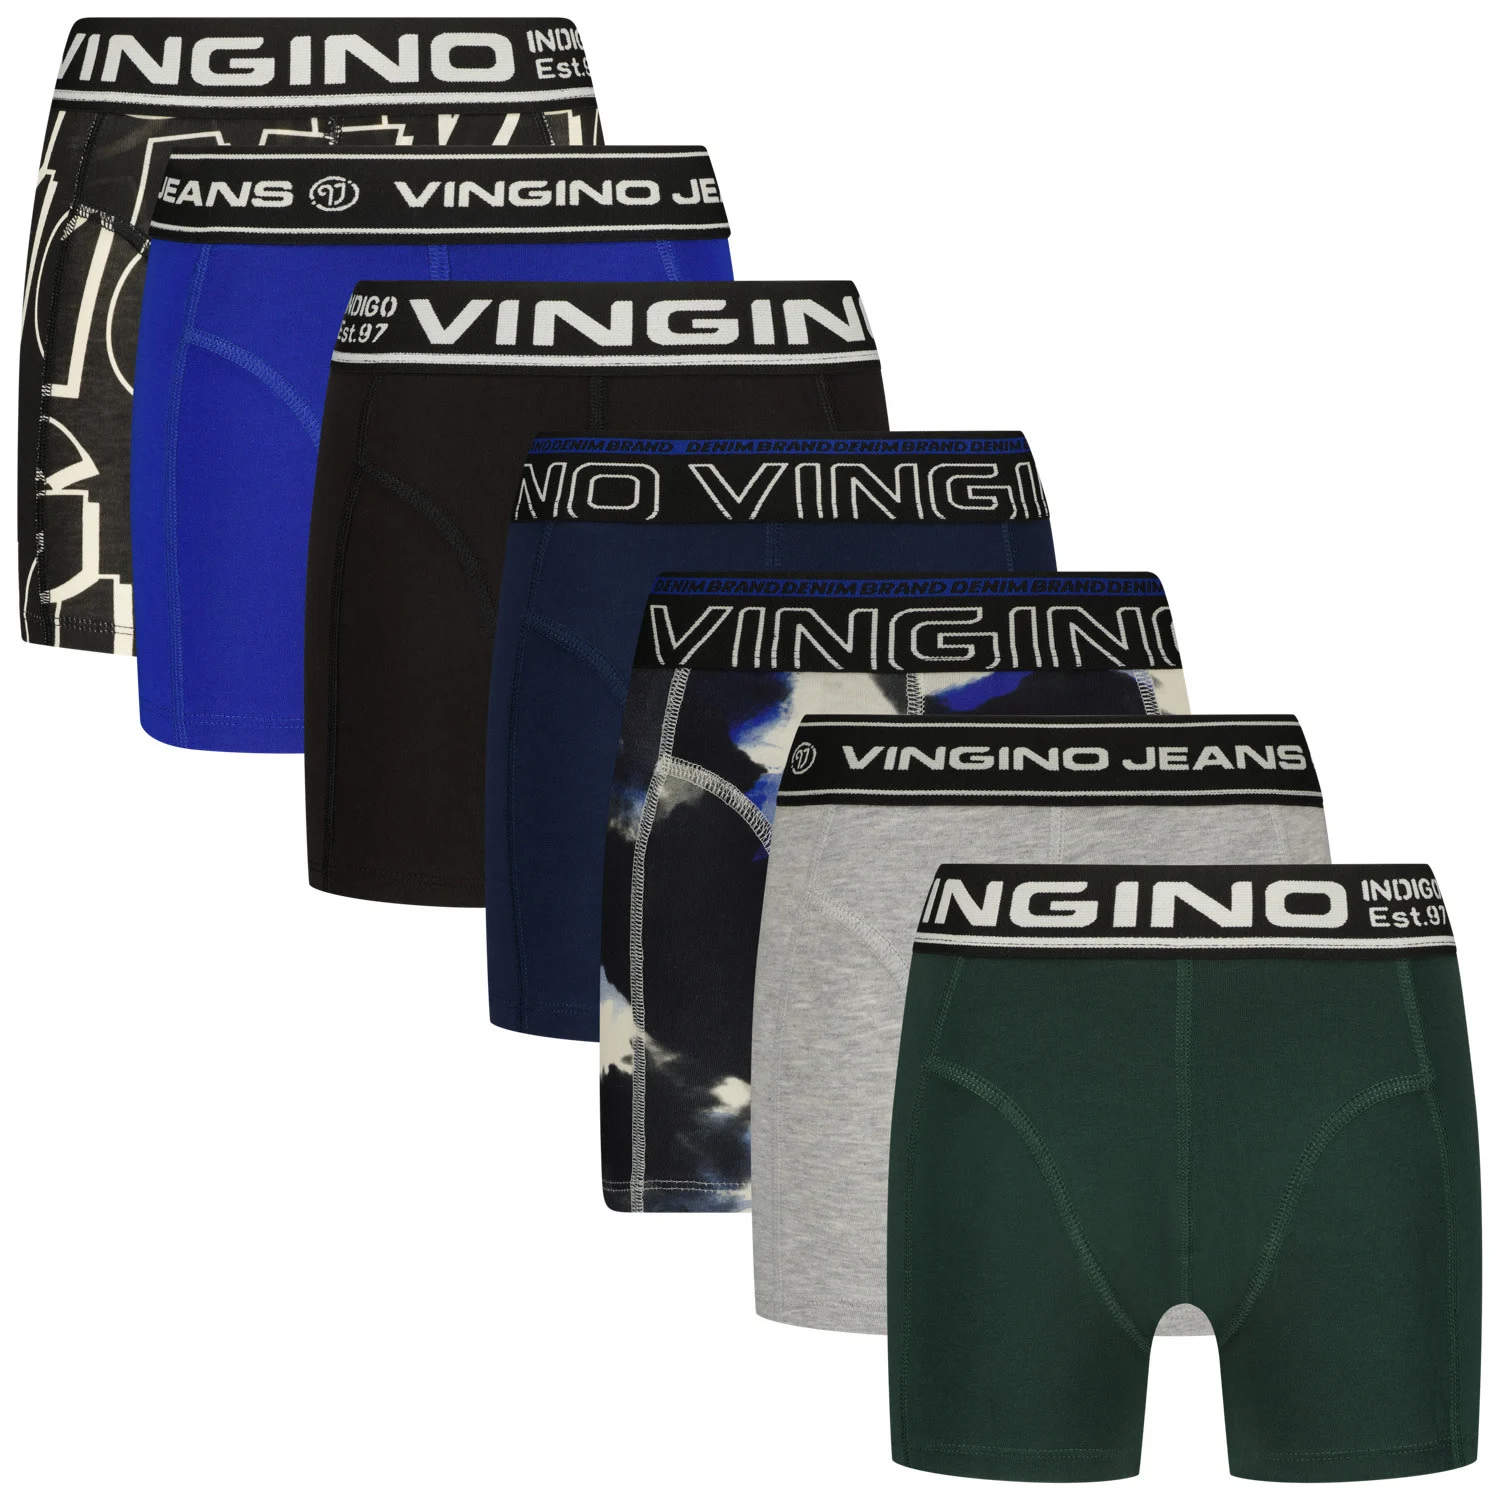 Afbeelding van Vingino Jongens ondergoed 7-pack boxers gift